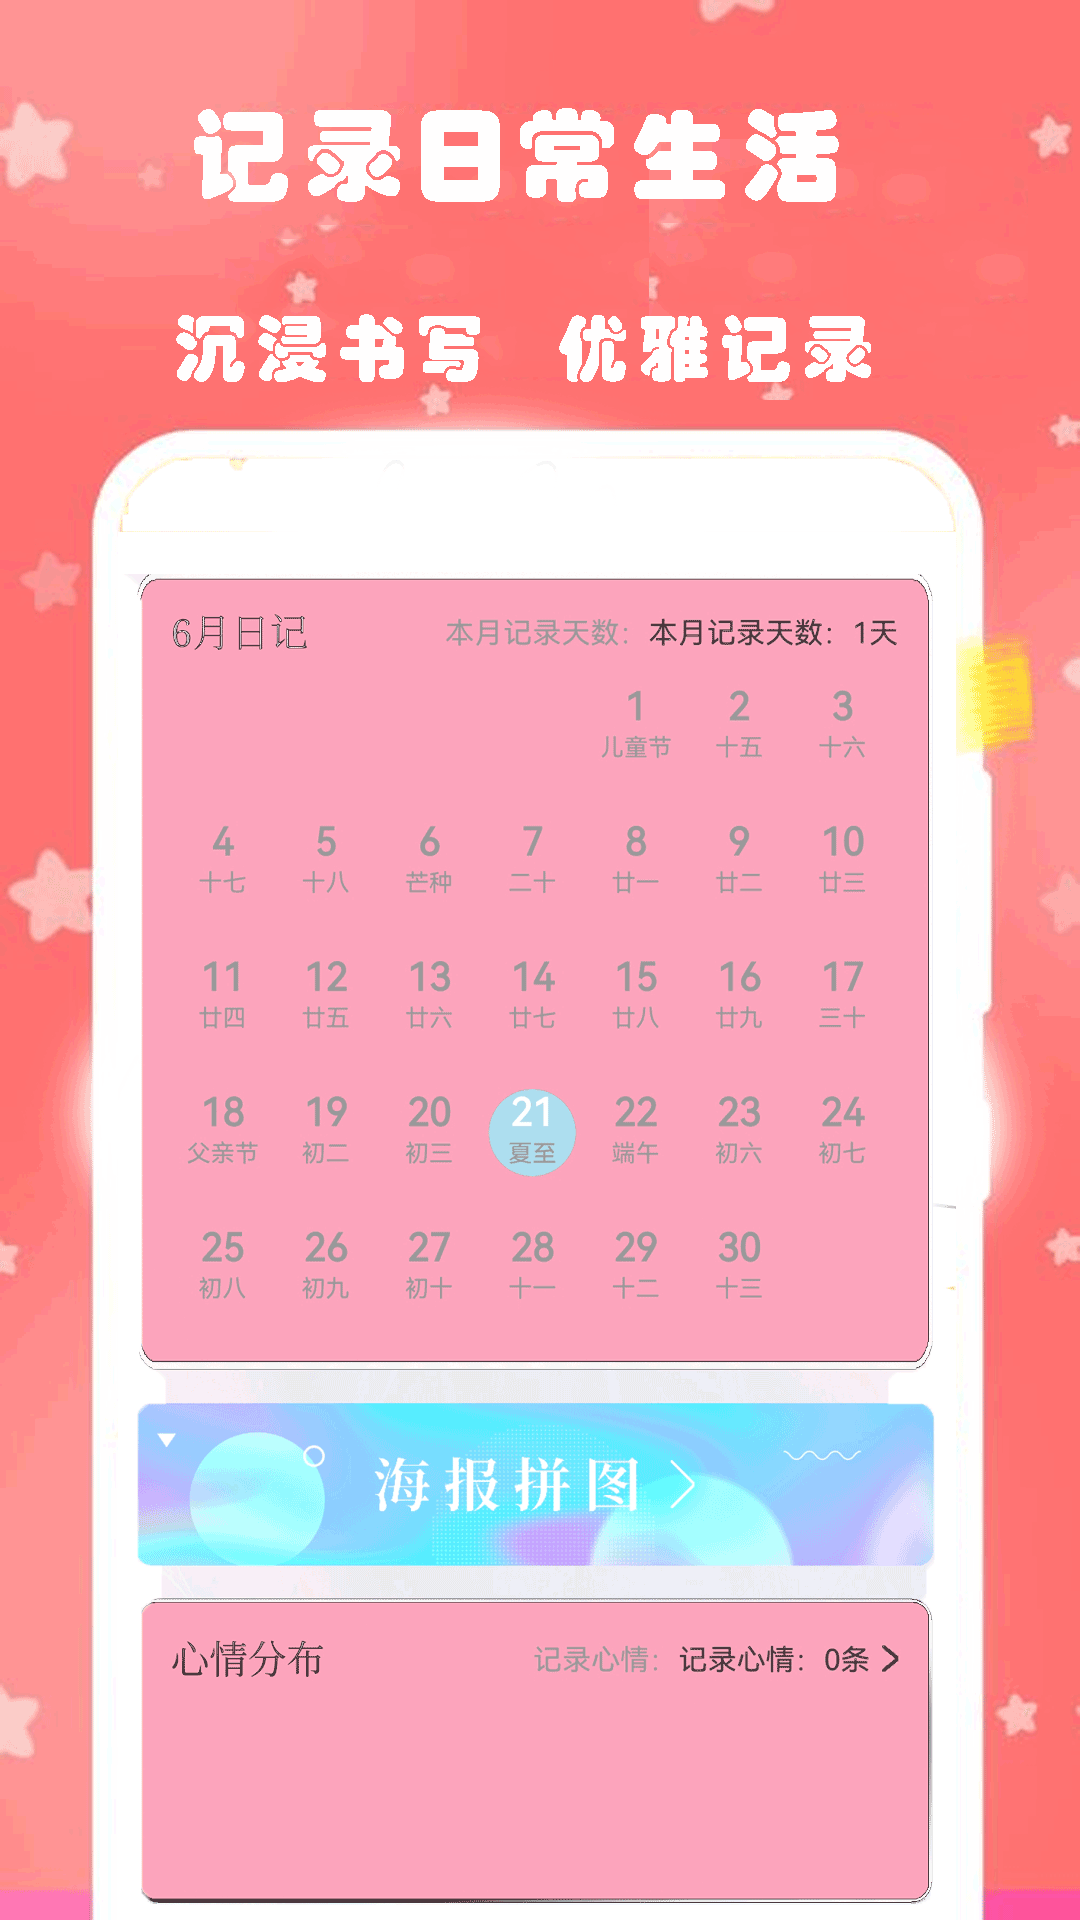 心动恋爱日常日记app下载-心动恋爱日常日记v1.2 安卓版